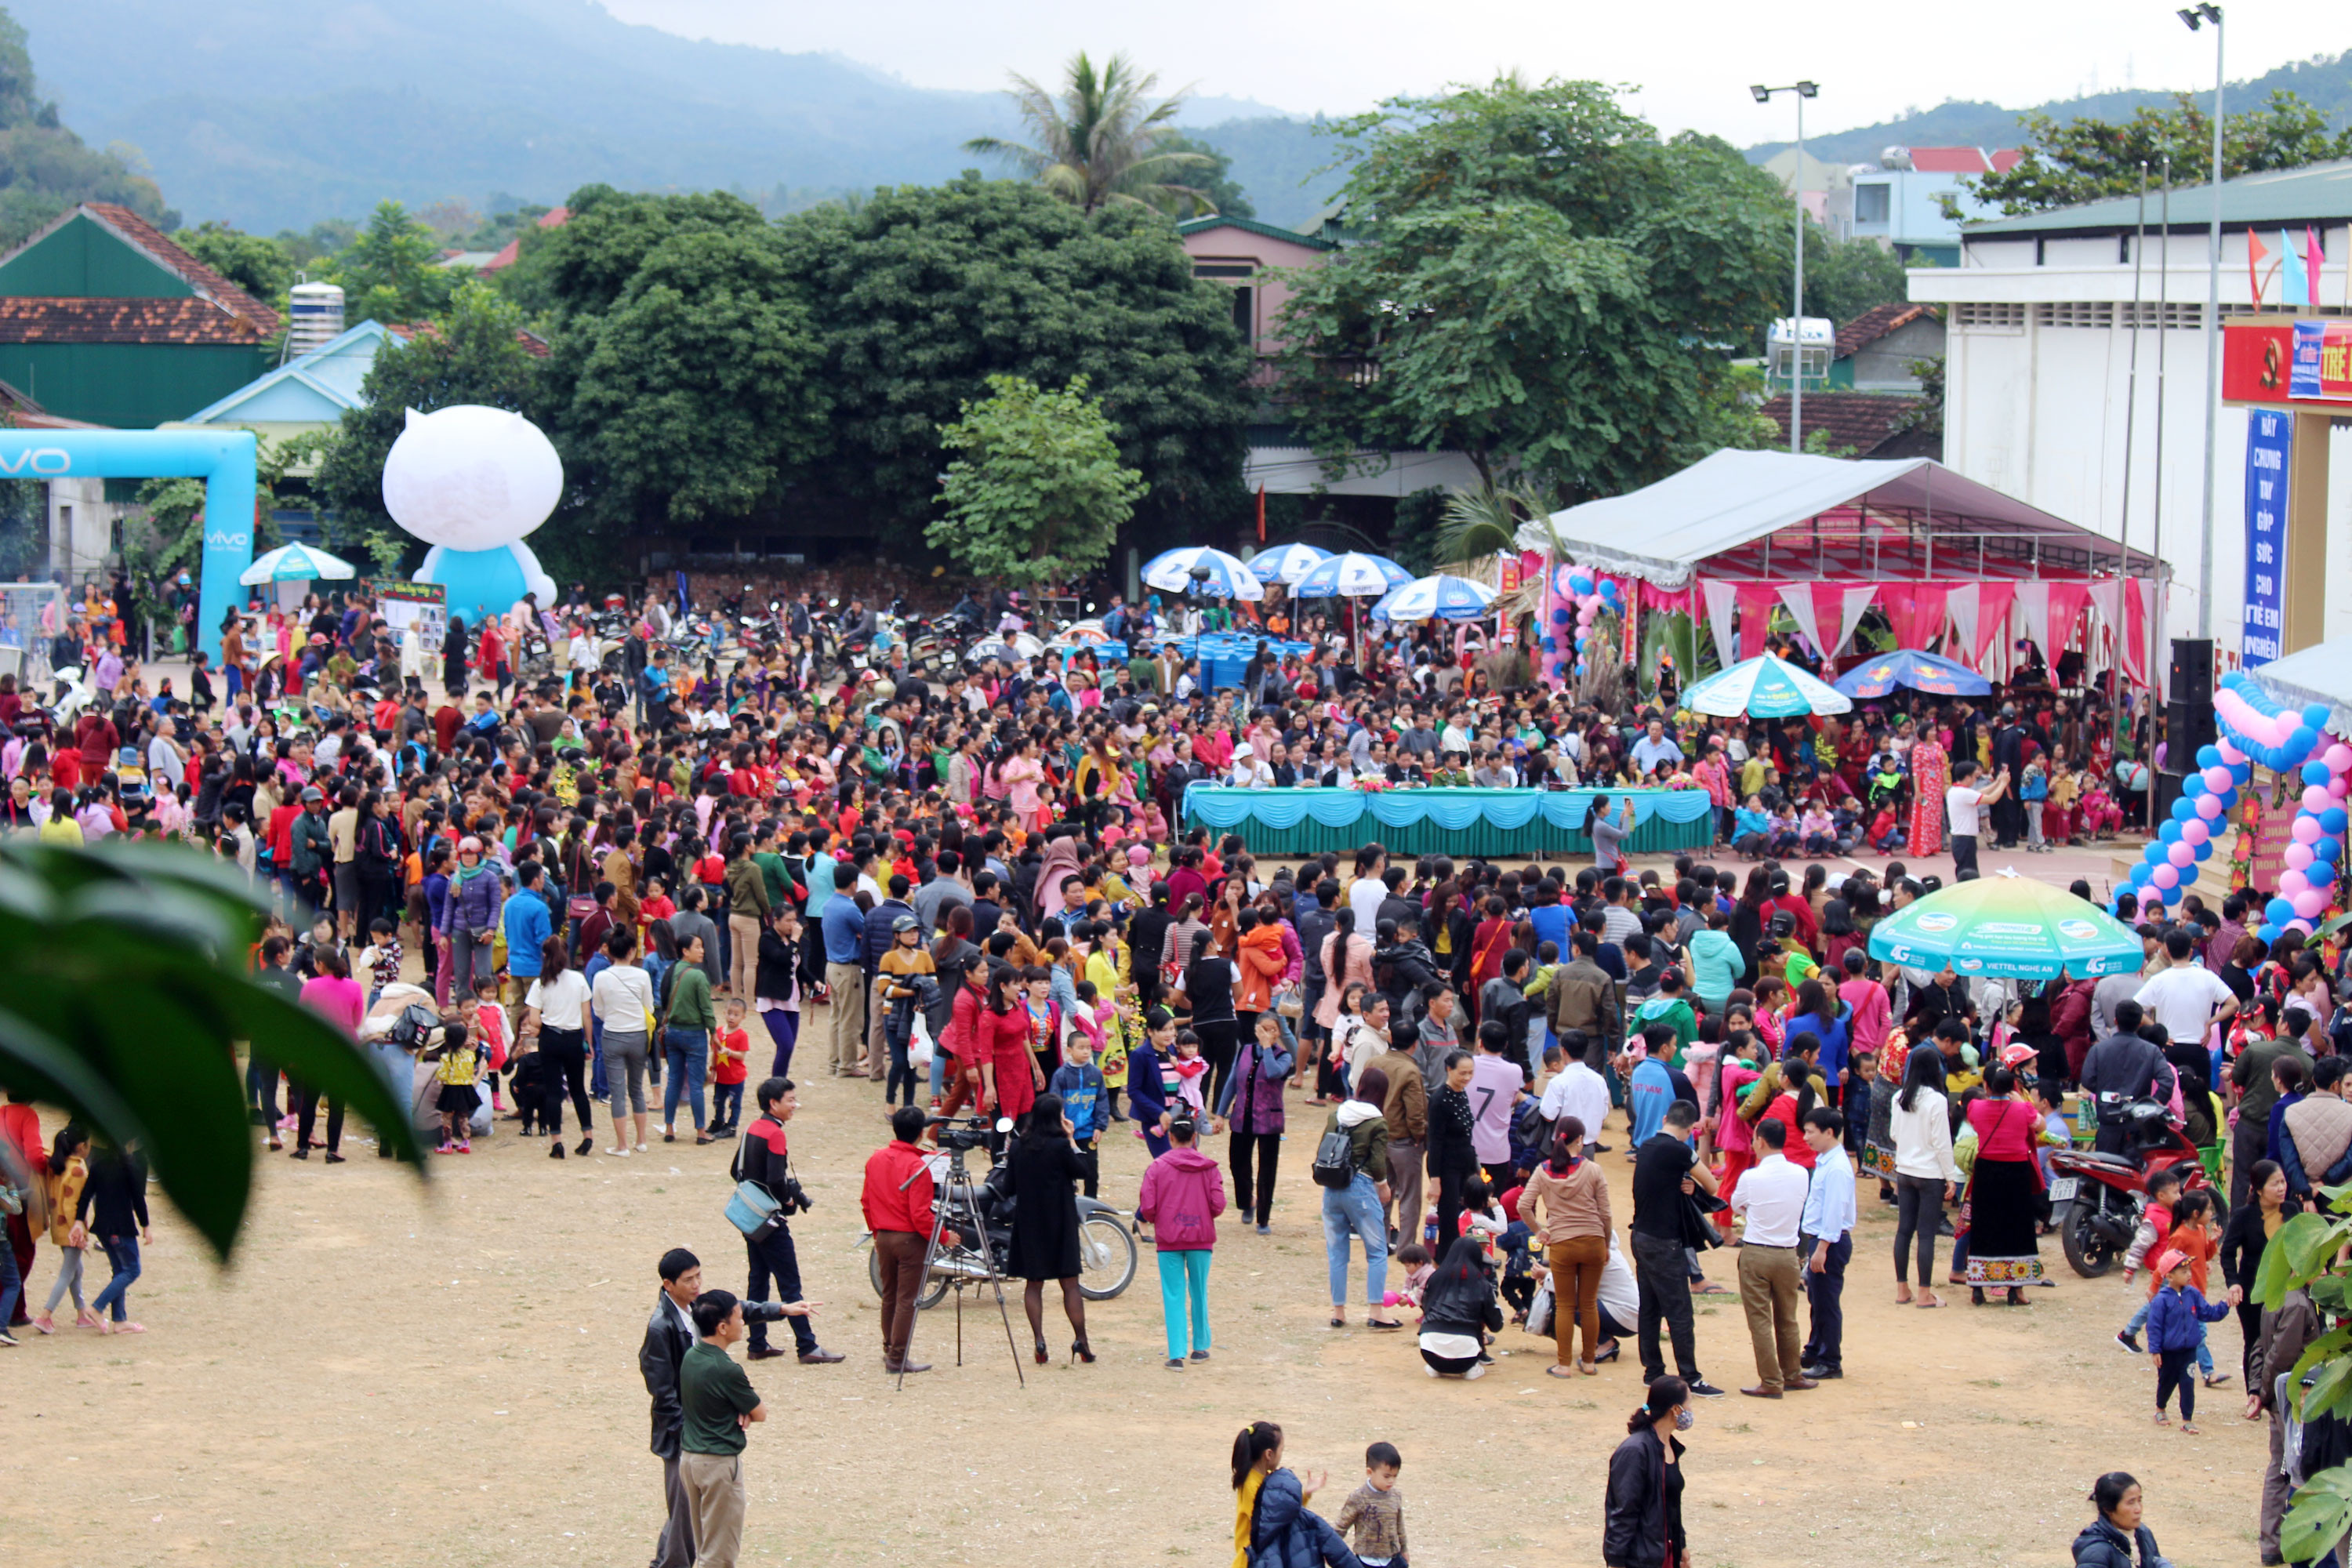 Hội chợ đã thu hút hàng ngàn người tham gia. Đây thực sự là ngày hội của trẻ em và bà con huyện Tương Dương trước ngày Tết đang đến gần. Ảnh: Đào Thọ